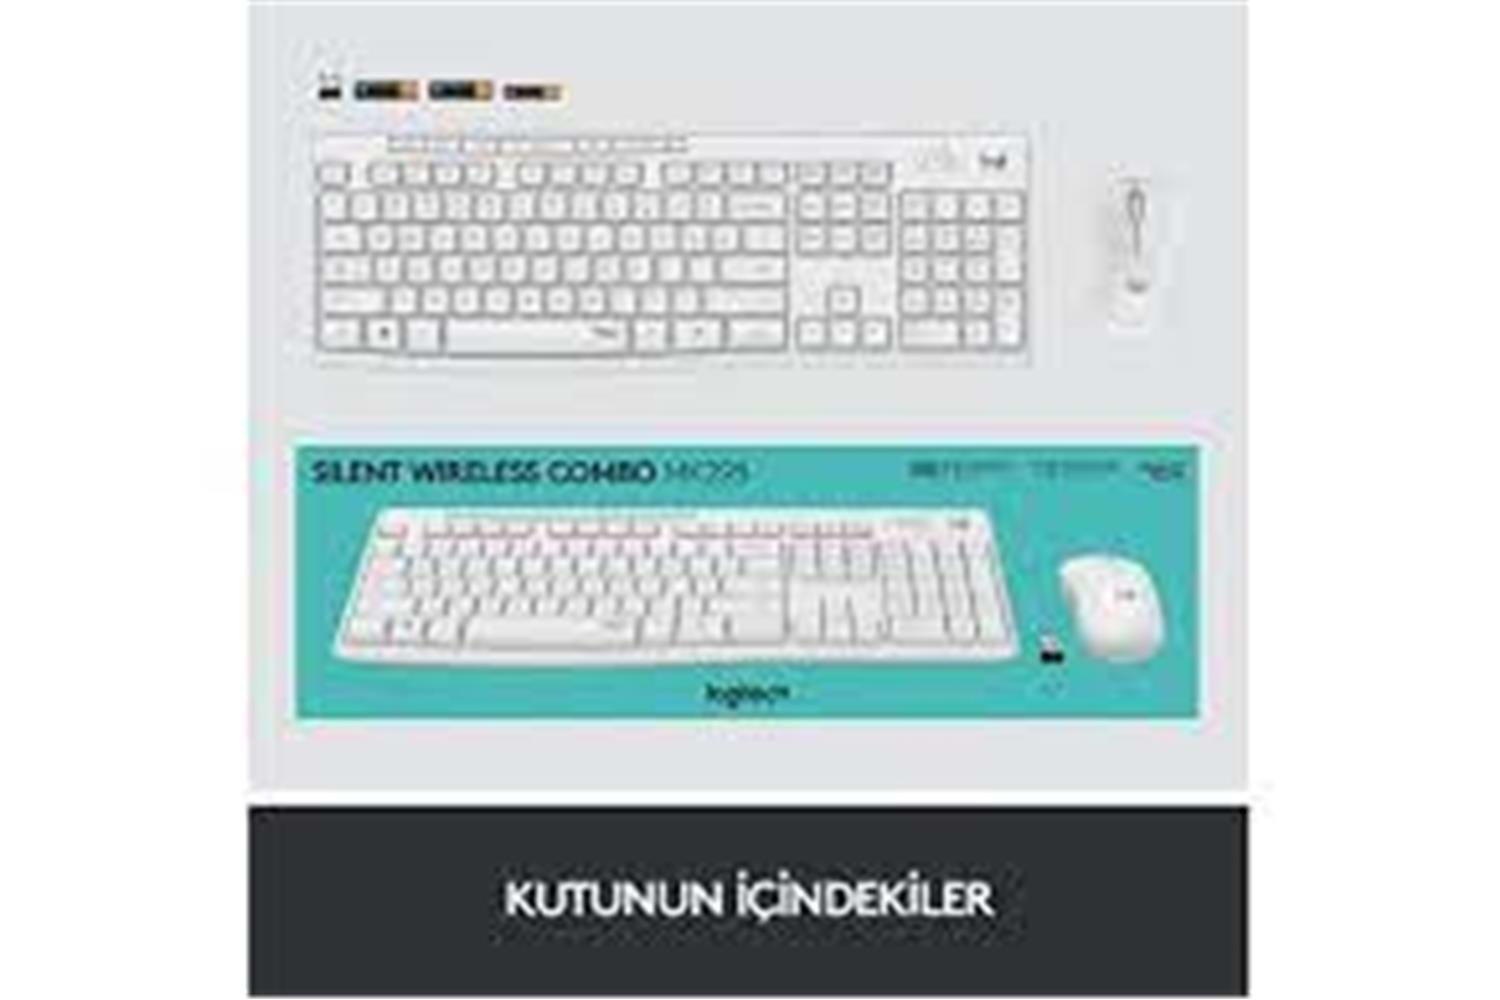 Logitech 920-010089 MK295 Kablosuz Beyaz Klavye Mouse Set